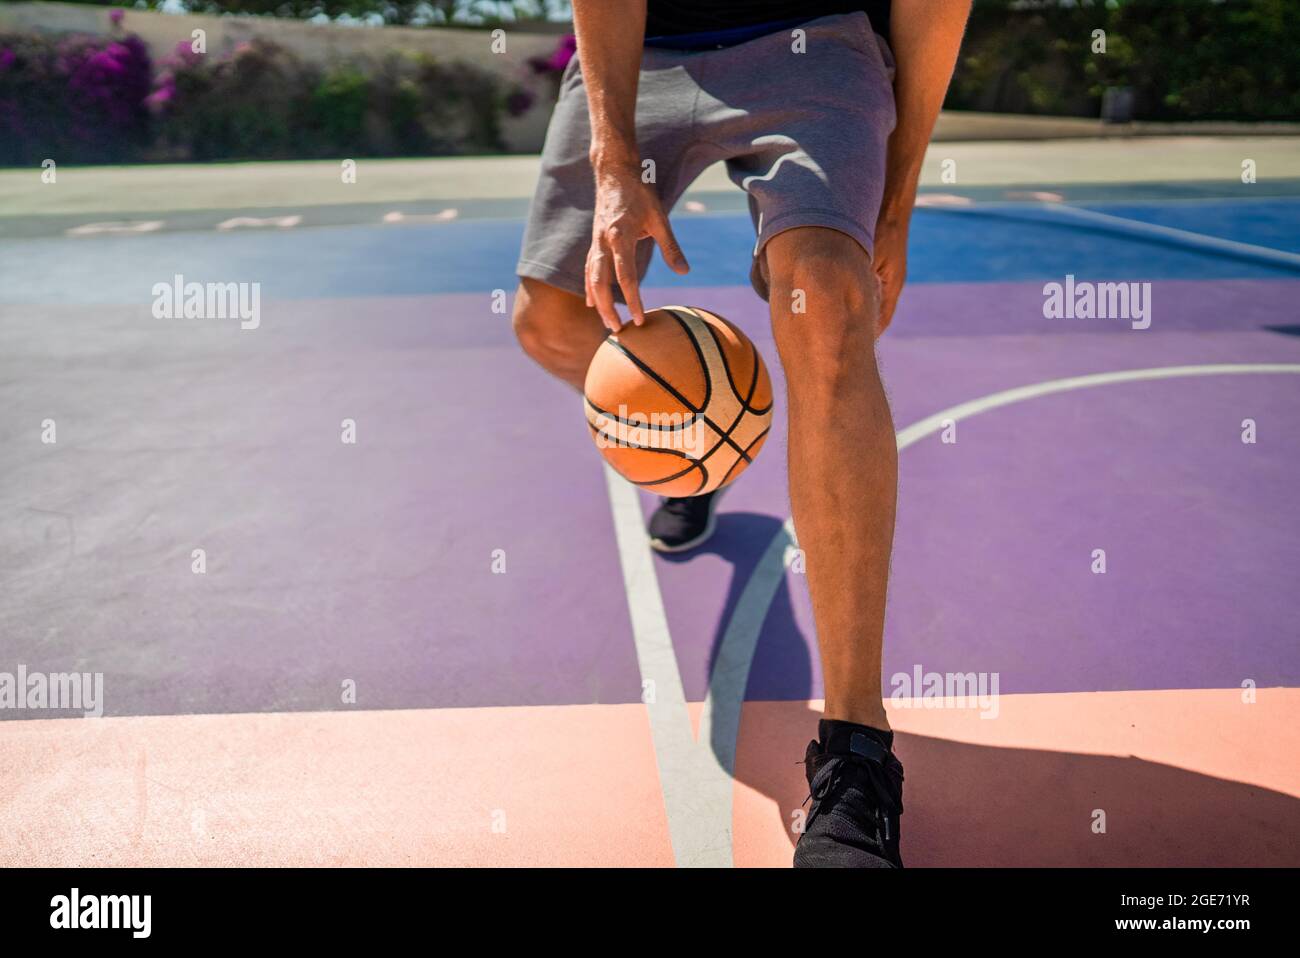 Gambe di un giocatore di basket professionista che dribbling la palla sul campo di pallacanestro. Il gioco è in pieno svolgimento Foto Stock